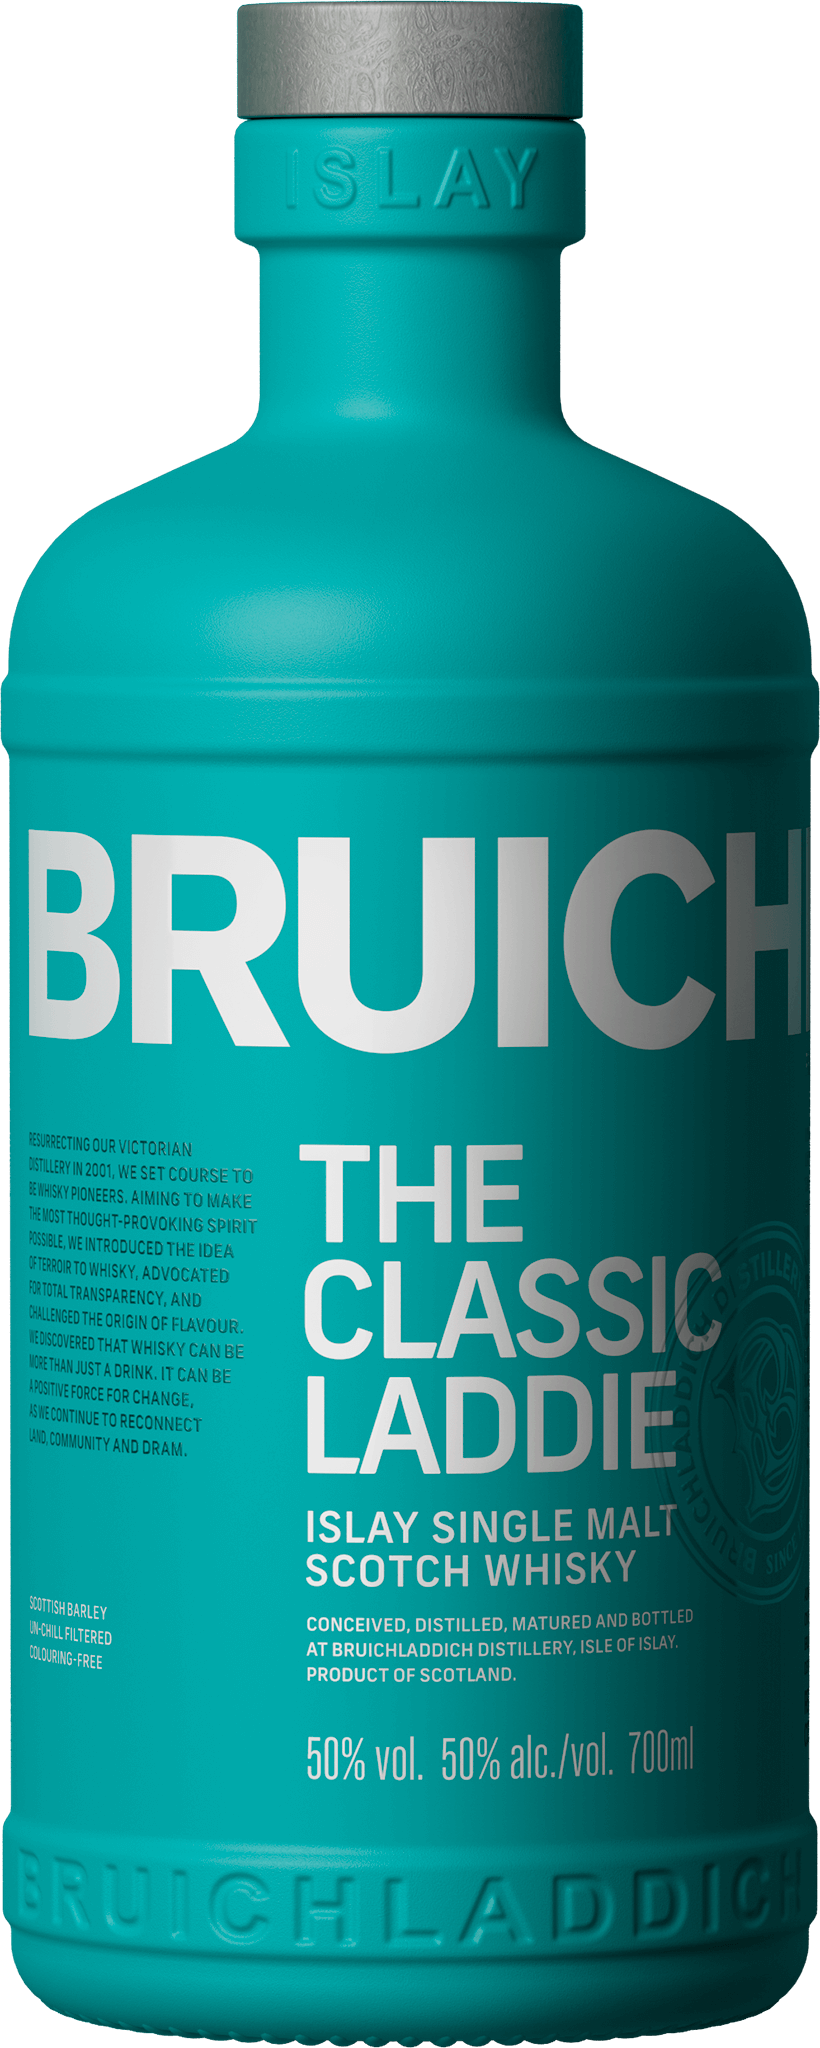 Bruichladdich The Classic Laddie Unpeated Islay Single Malt Scotch